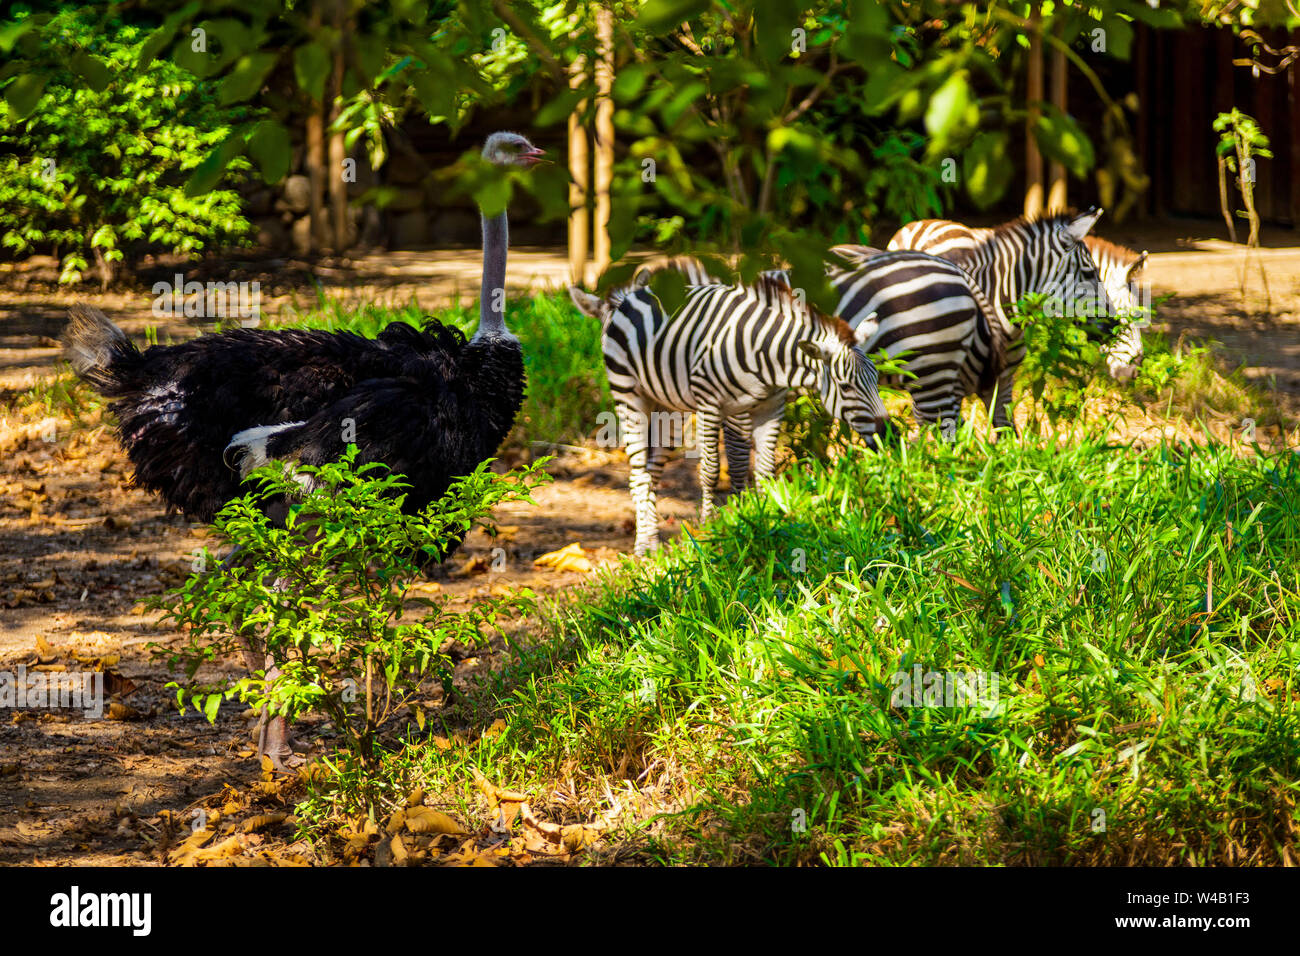 animals of the African savanna Stock Photo